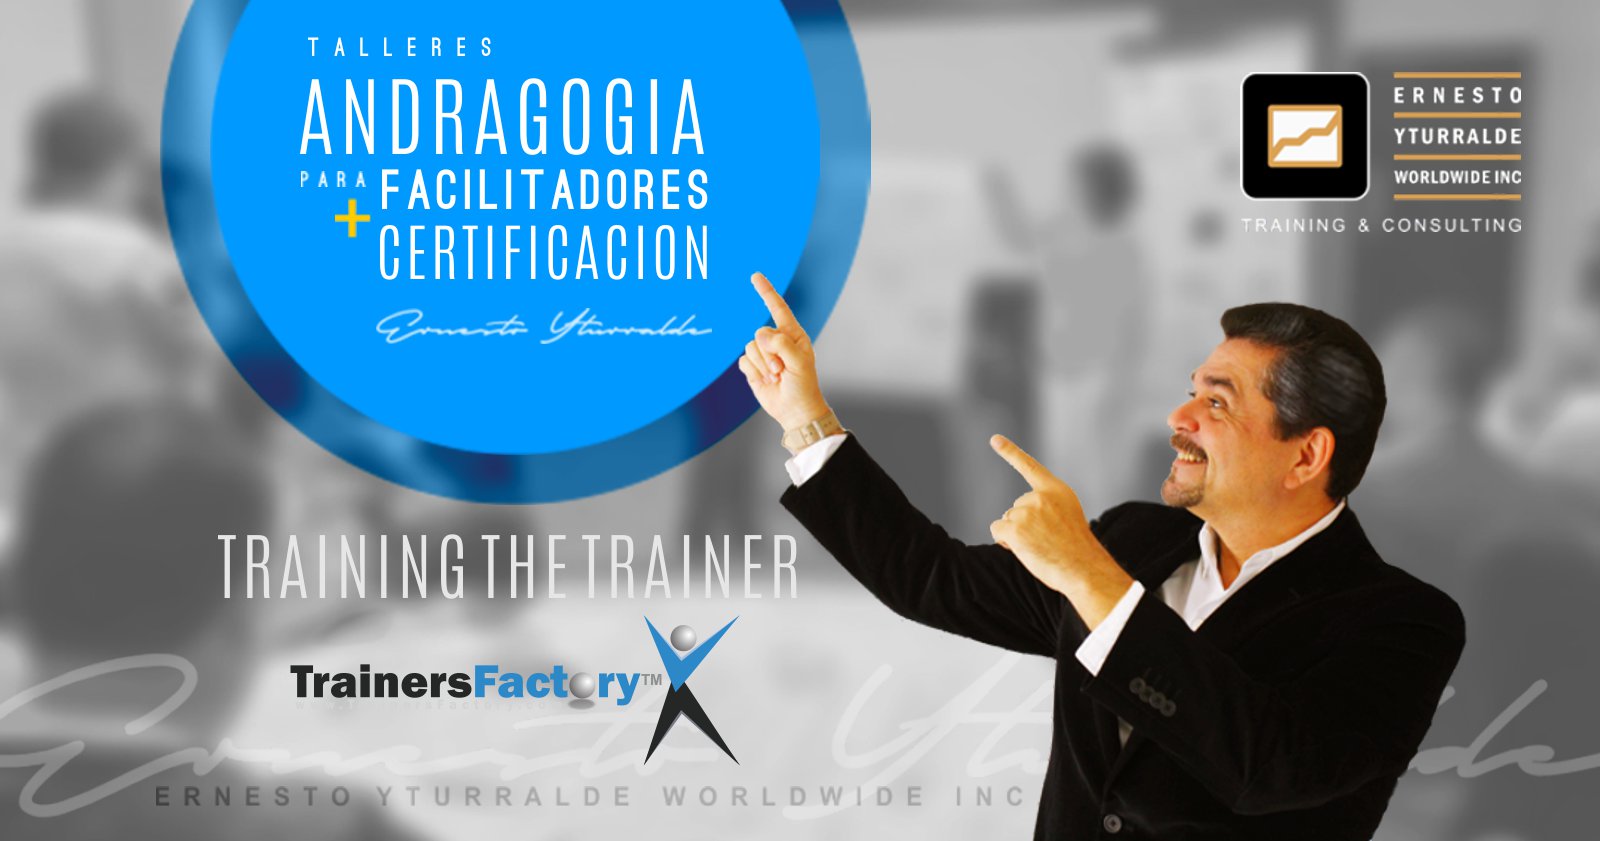 TOT | Training Of Trainers / Formación de Formadores, talleres de Andragogia para desarrollar habilidades y competencias a Facilitadores, Consultores y Docentes | Ernesto Yturralde Worldwide Inc. Training & Consulting